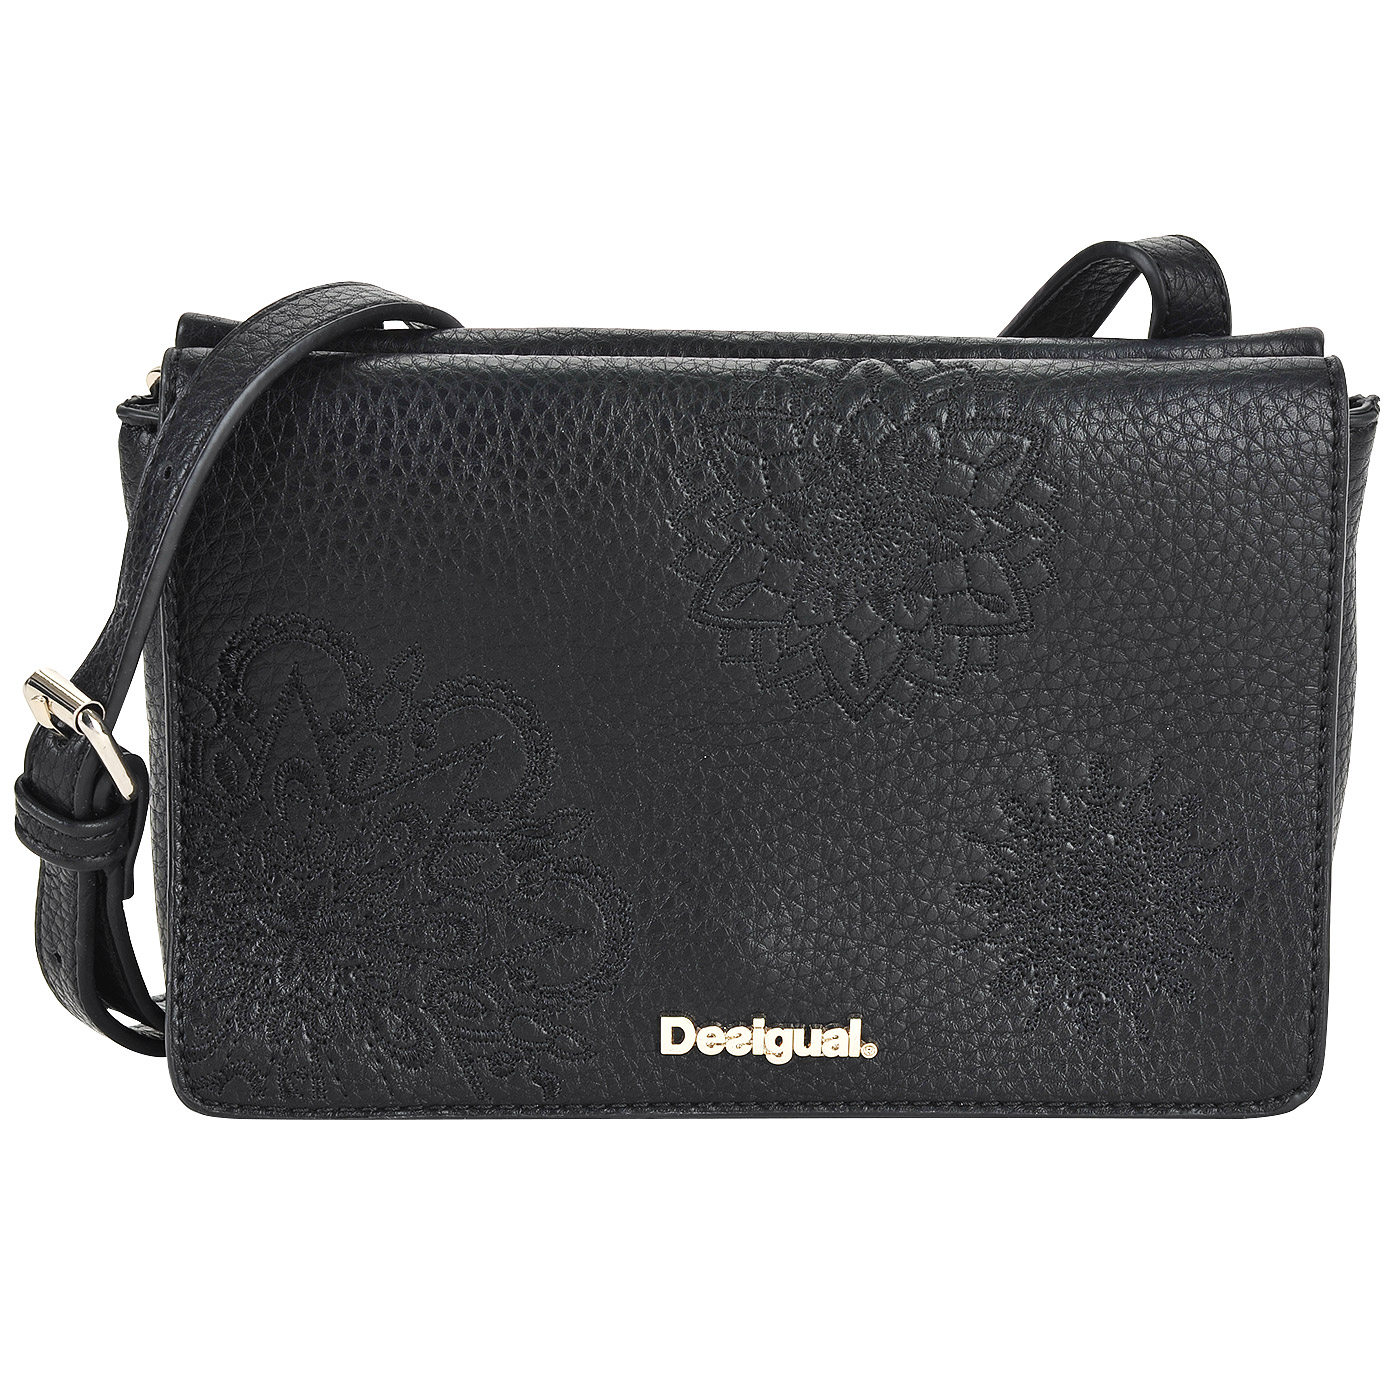 Черная сумка с декоративной вышивкой Desigual